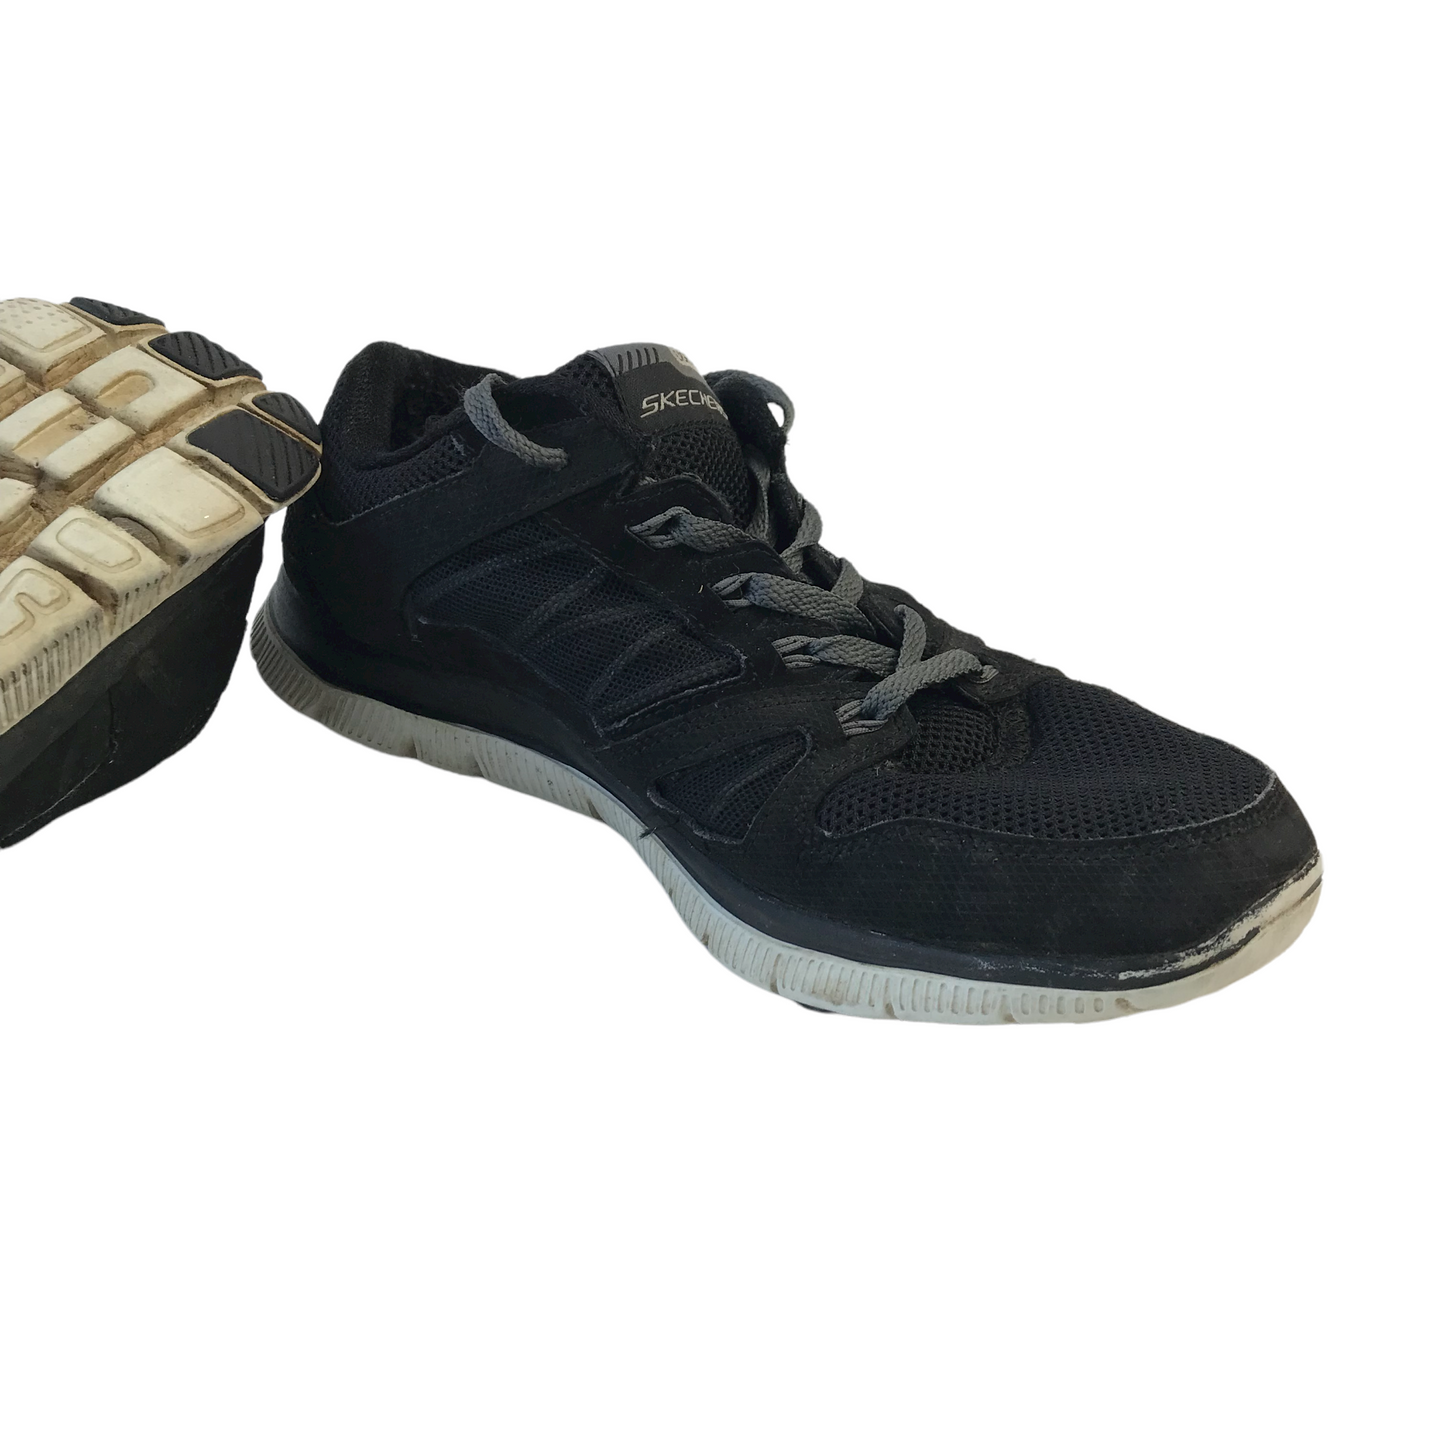 Skechers Lightweight Black Trainers Shoe Size 7